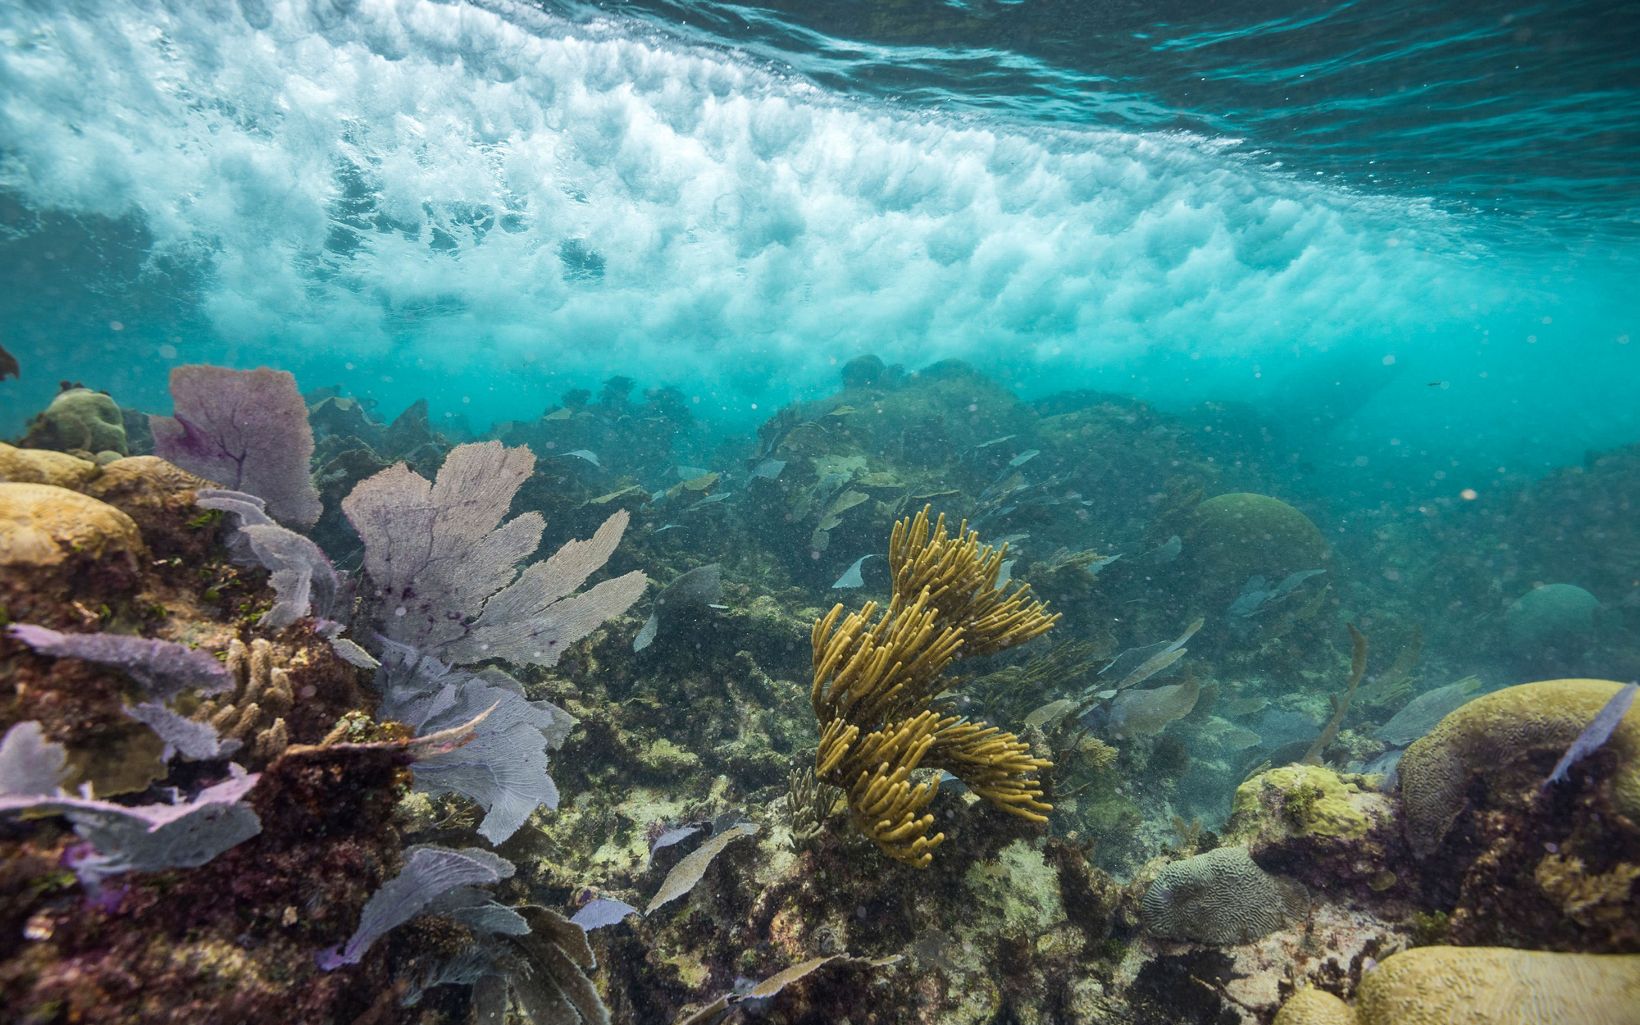 Los arrecifes de coral saludables como estos, cercanos a Puerto Morelos (México), se llevan la peor parte del azote de las olas y resguardan los lugares más visitados por los turistas en la costa del Caribe.